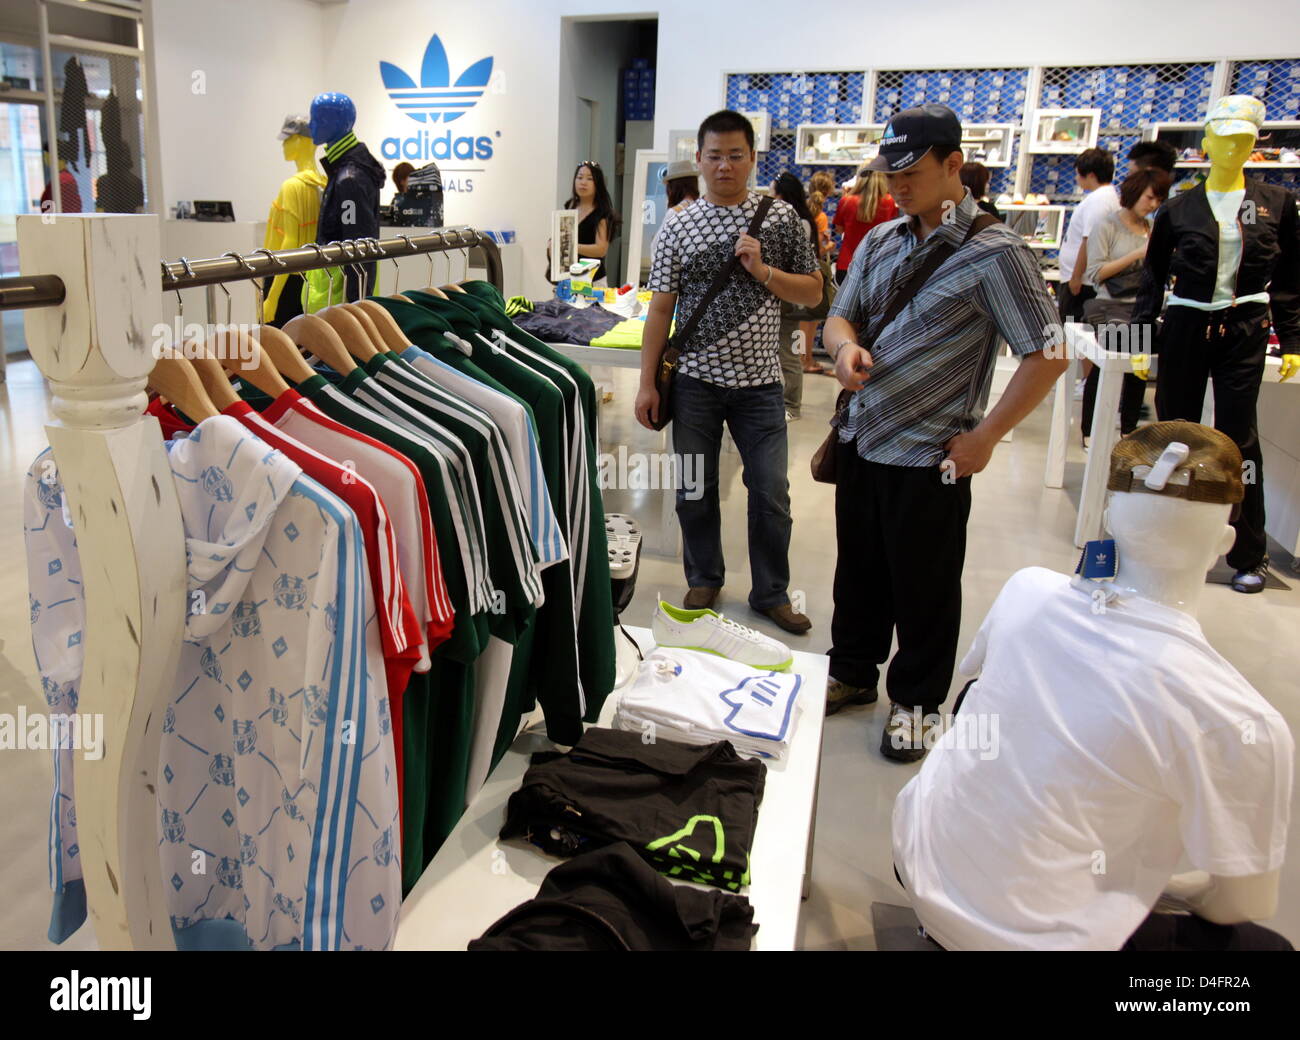 L'intérieur de la nouvelle marque Adidas 'Centre', jusqu'à présent le plus  grand magasin adidas, à Beijing, Chine, 19 août 2008. Le magasin couvre  3,170m² et quatre histoires de 